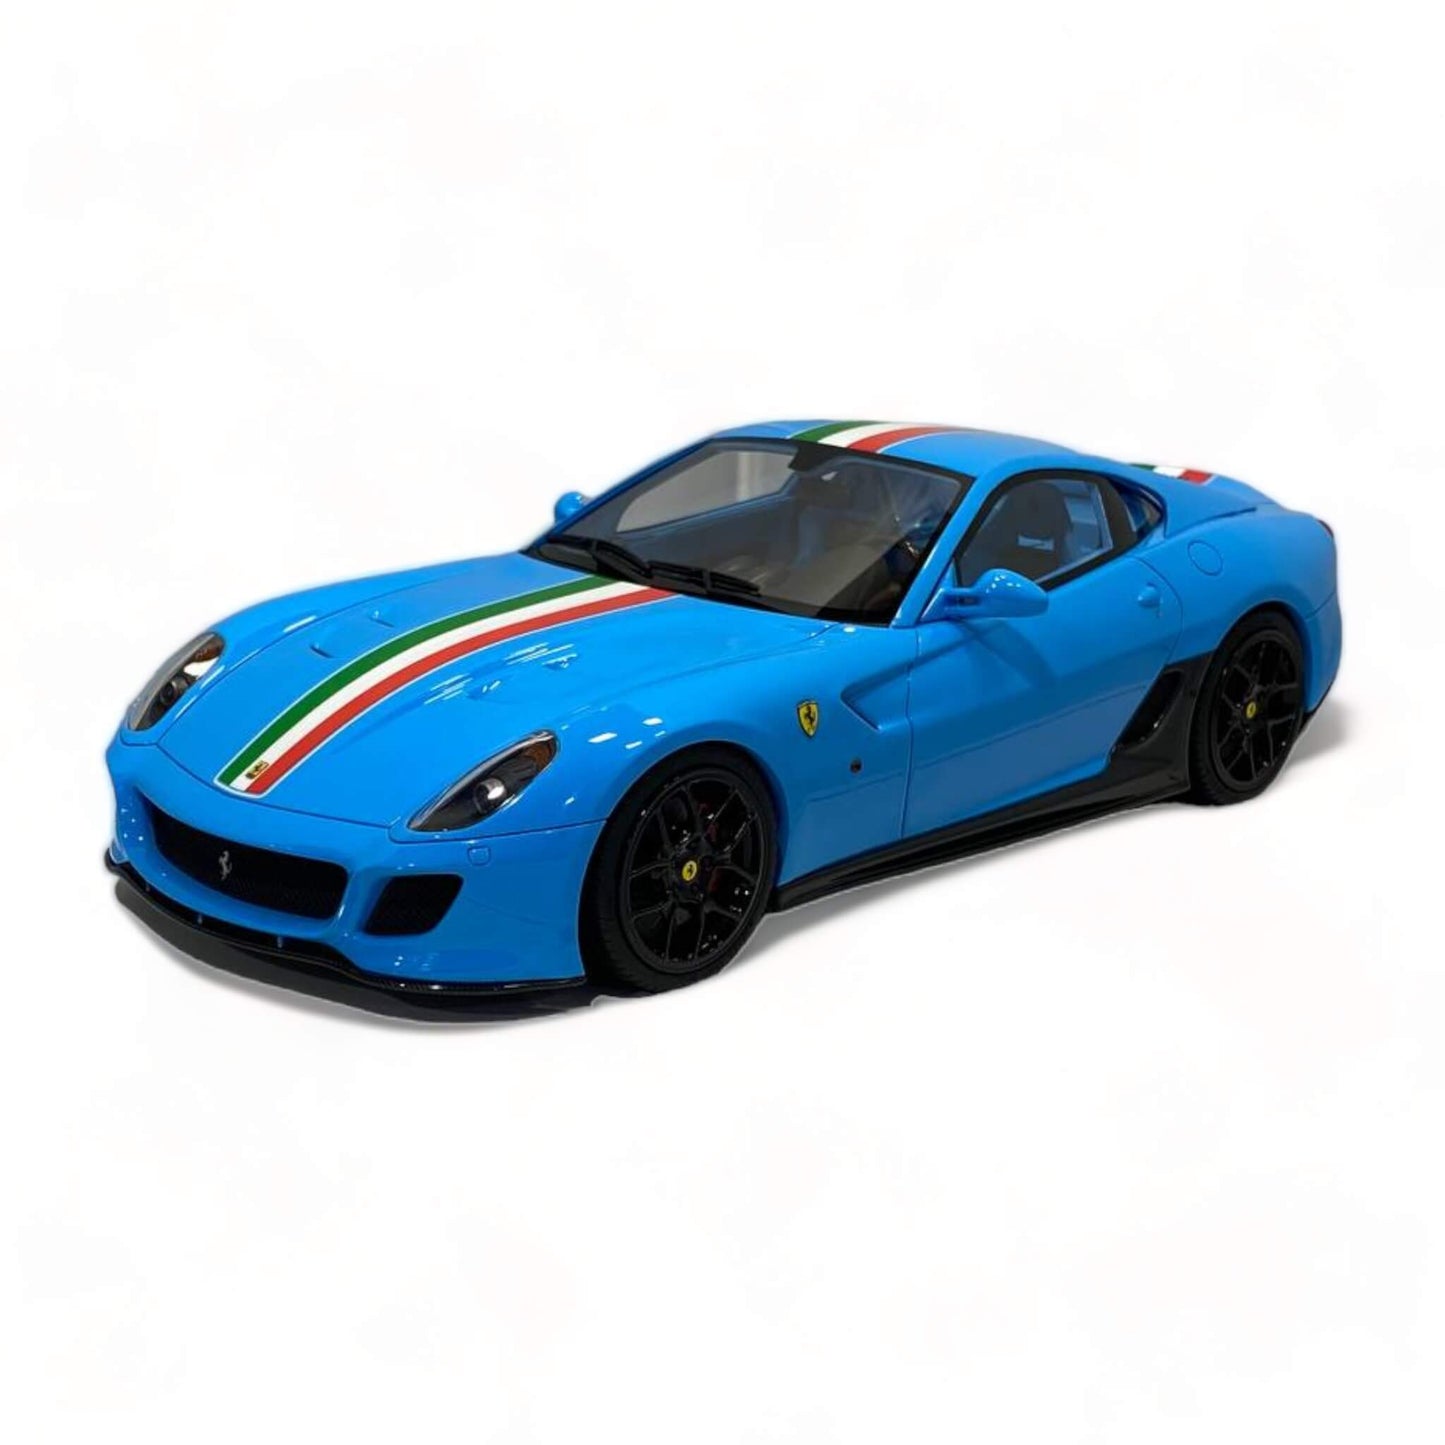 Ferrari Novitec 599 GTO Blue by Runner (27 of 67):